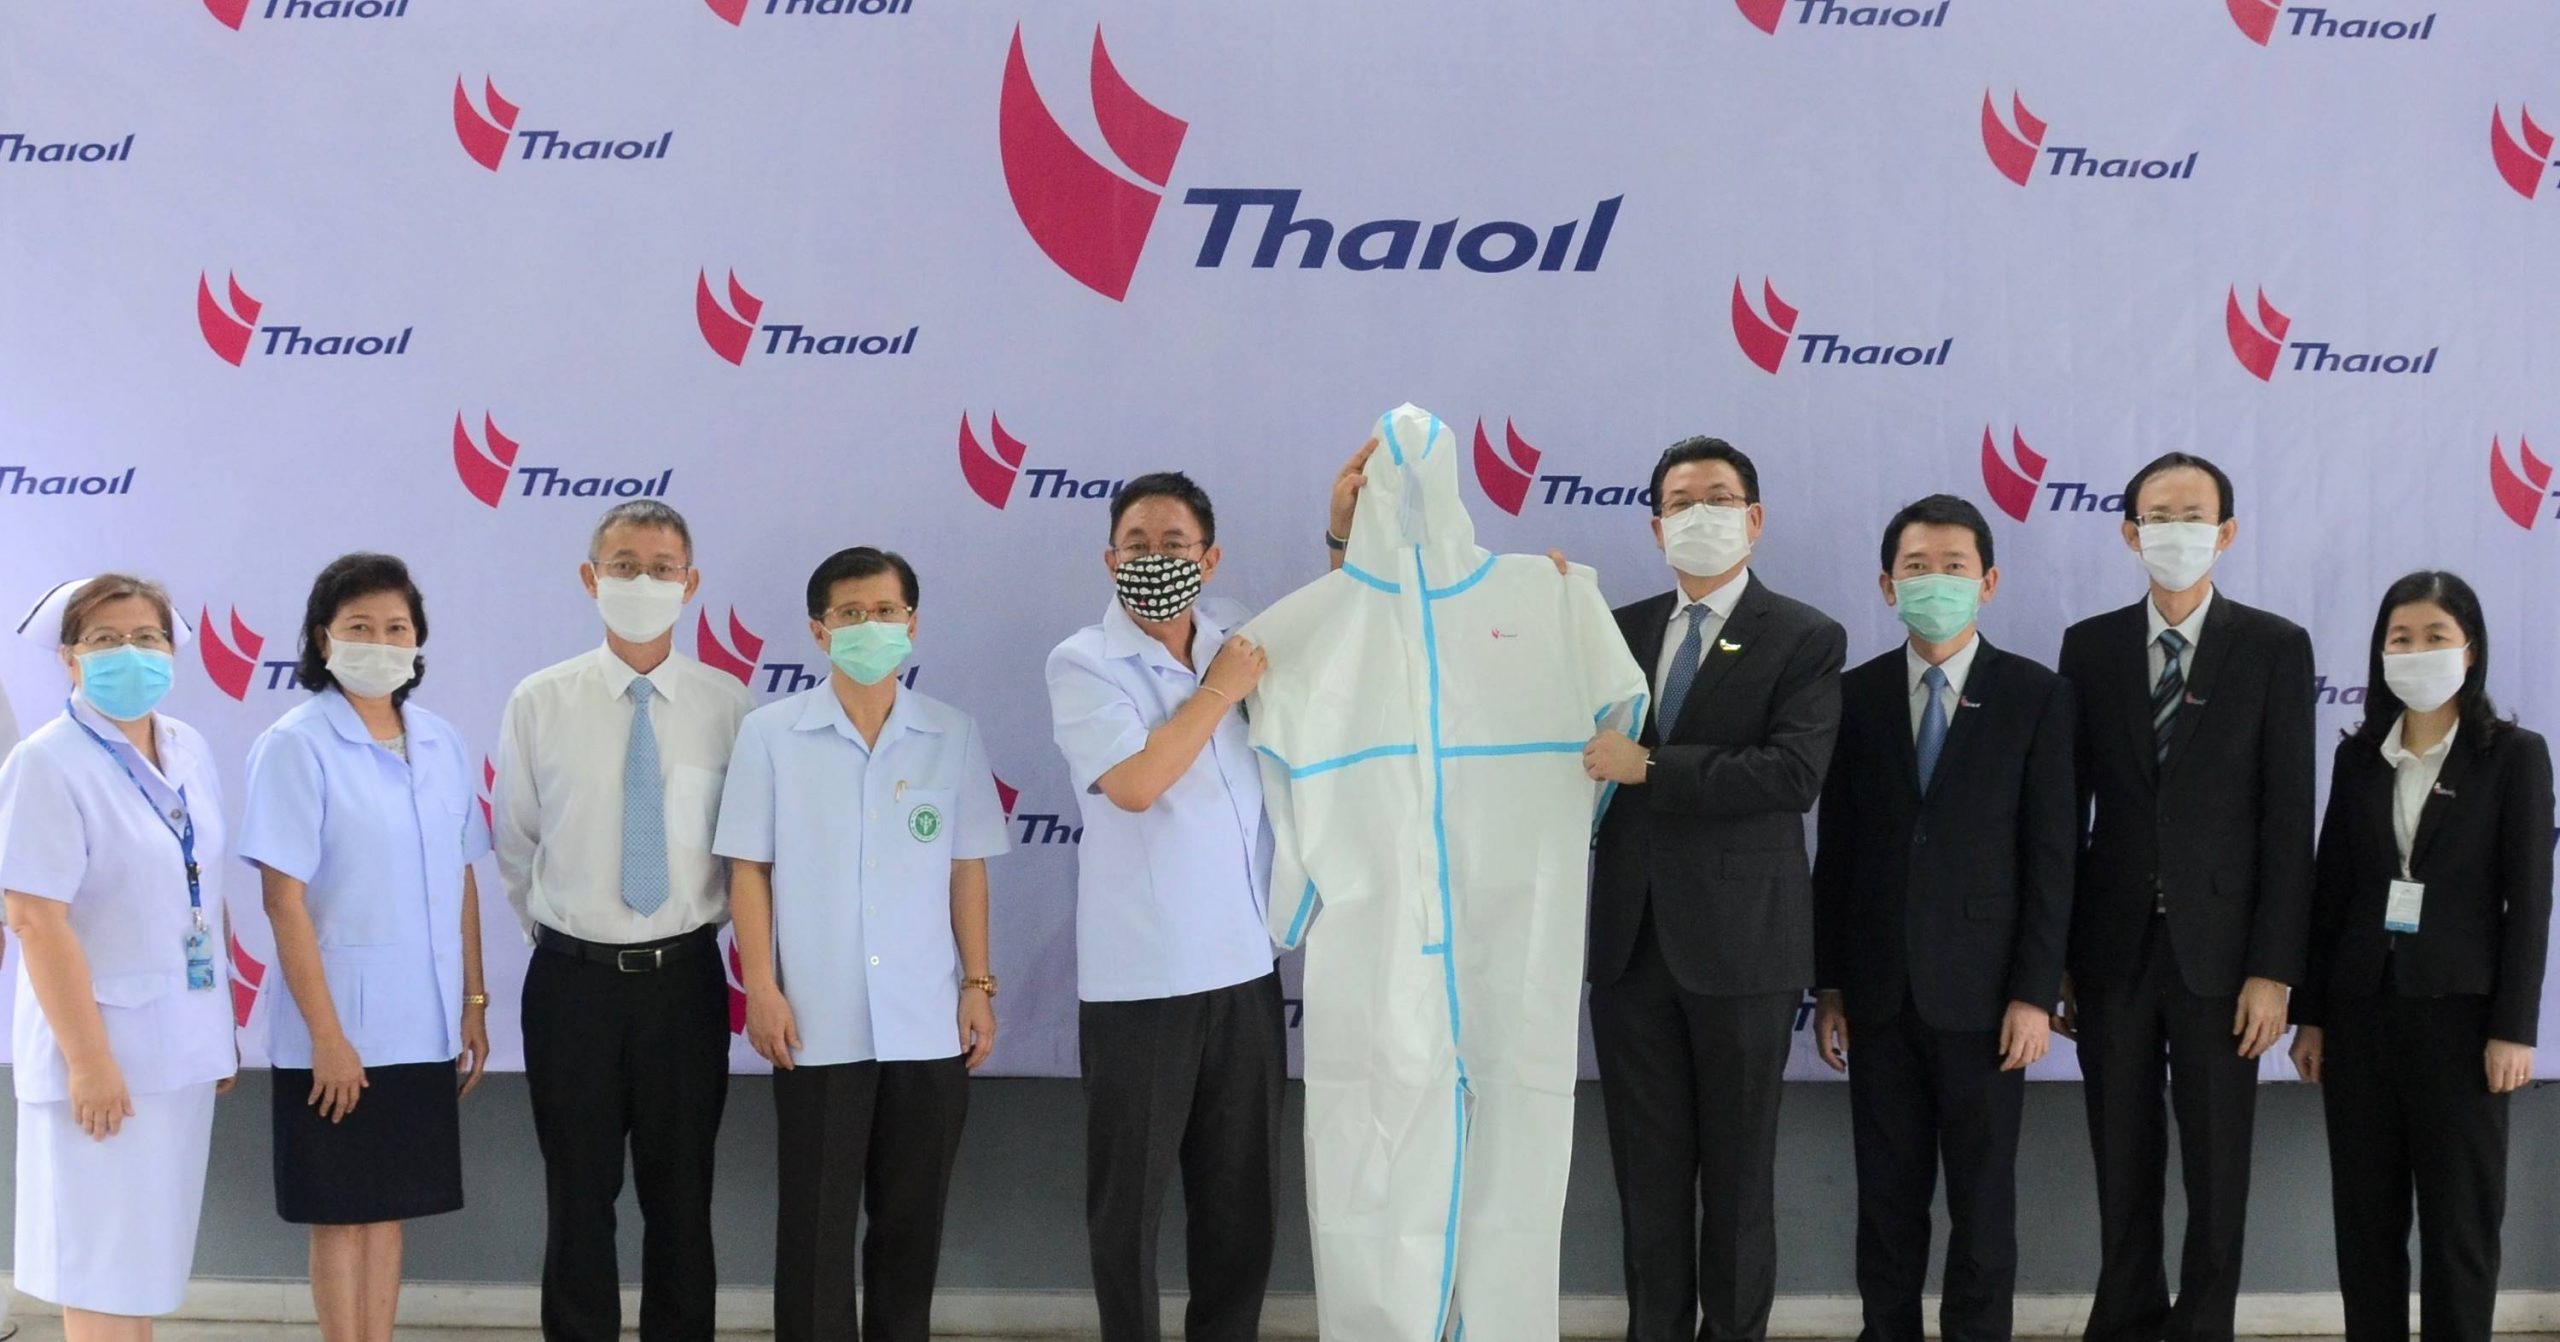 กลุ่มไทยออยล์เดินหน้าปกป้องบุคลากรทางการแพทย์ ส่งมอบชุดคลุมป้องกันการติดเชื้อ ให้กับโรงพยาบาล ในพื้นที่ จ.ชลบุรี มูลค่า 5,100,000 บาท